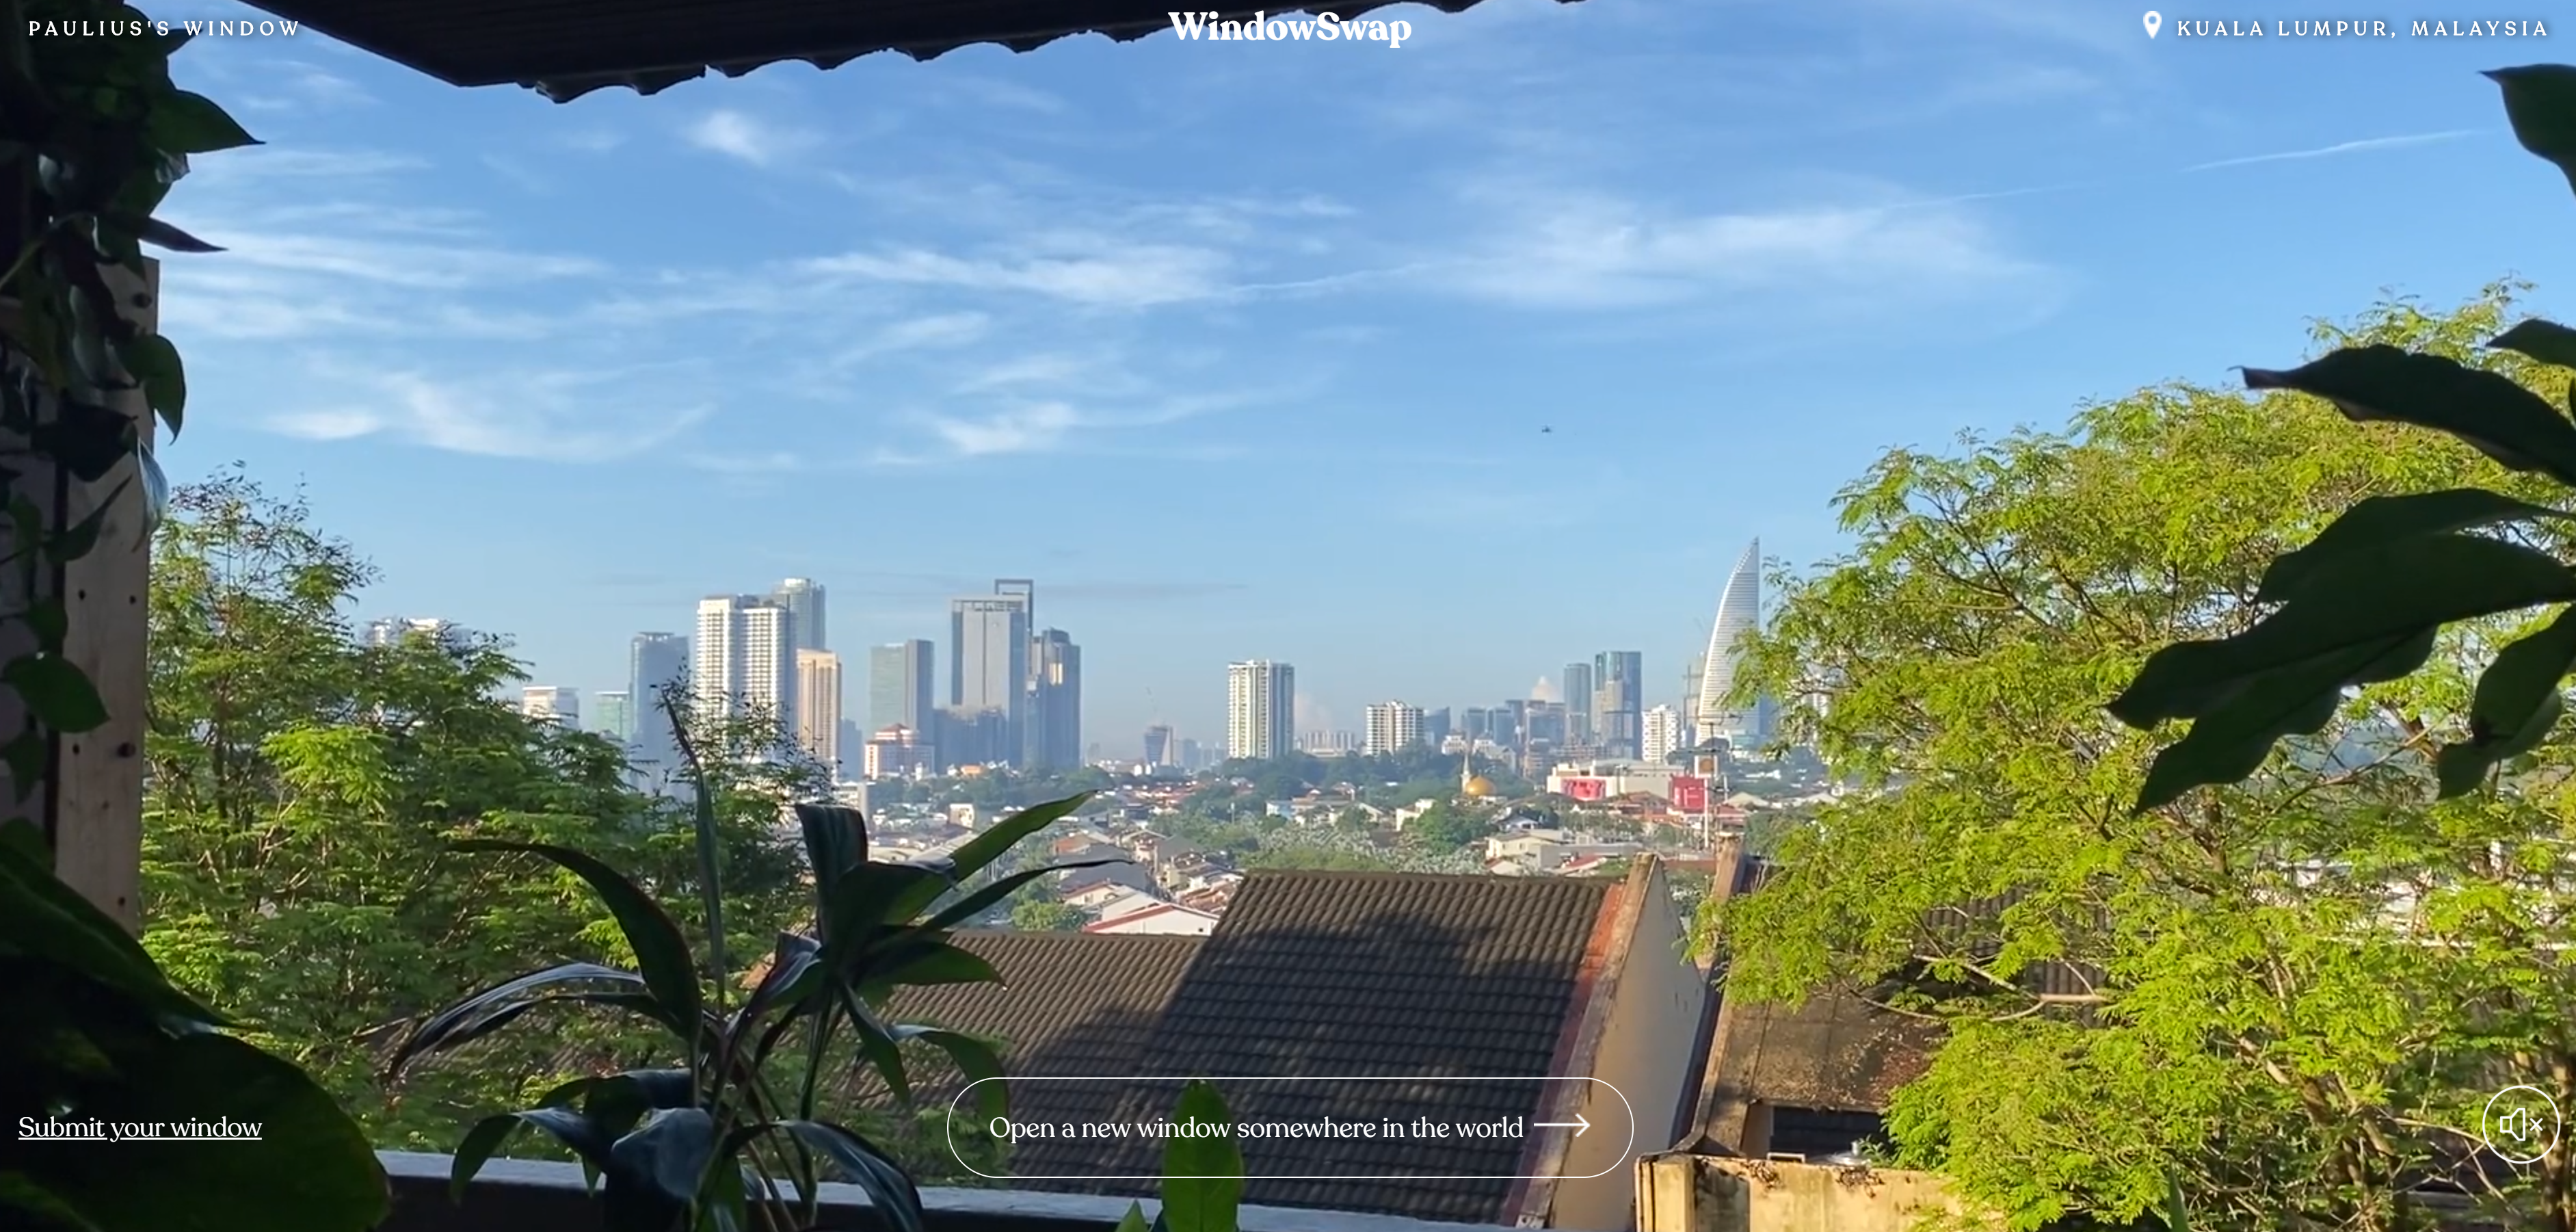 View Of Kuala Lumper On WindowSwap